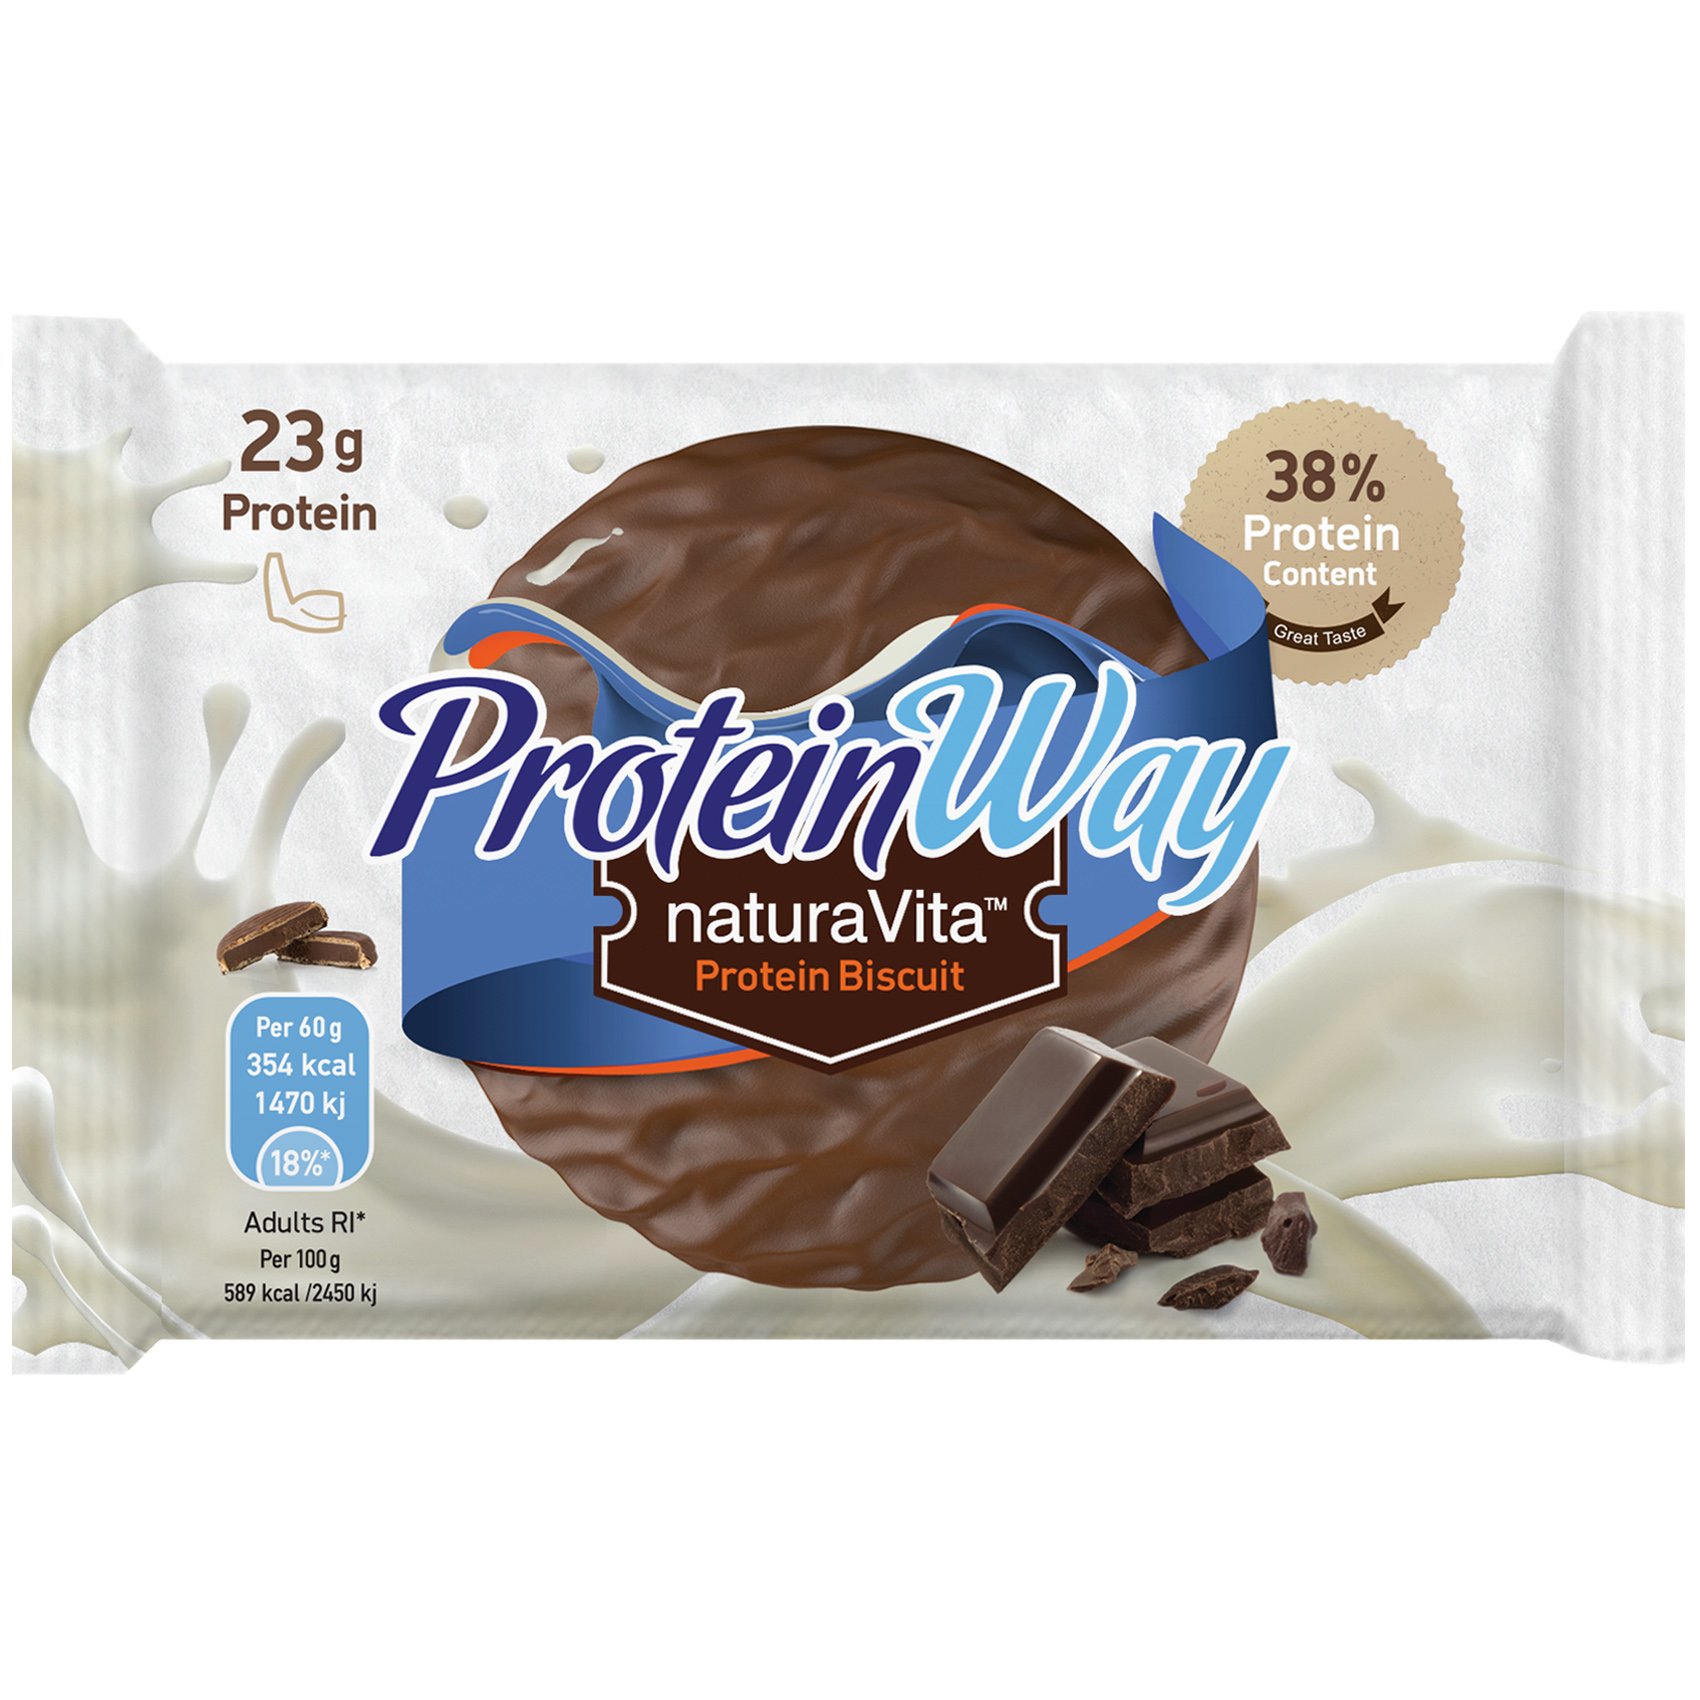 Εικόνα από Natura Vita Protein Way Biscuit Chocolate Flavour Μπισκότο Πρωτεΐνης με Γεύση Σοκολάτας & Επικάλυψη Κακάο 60g